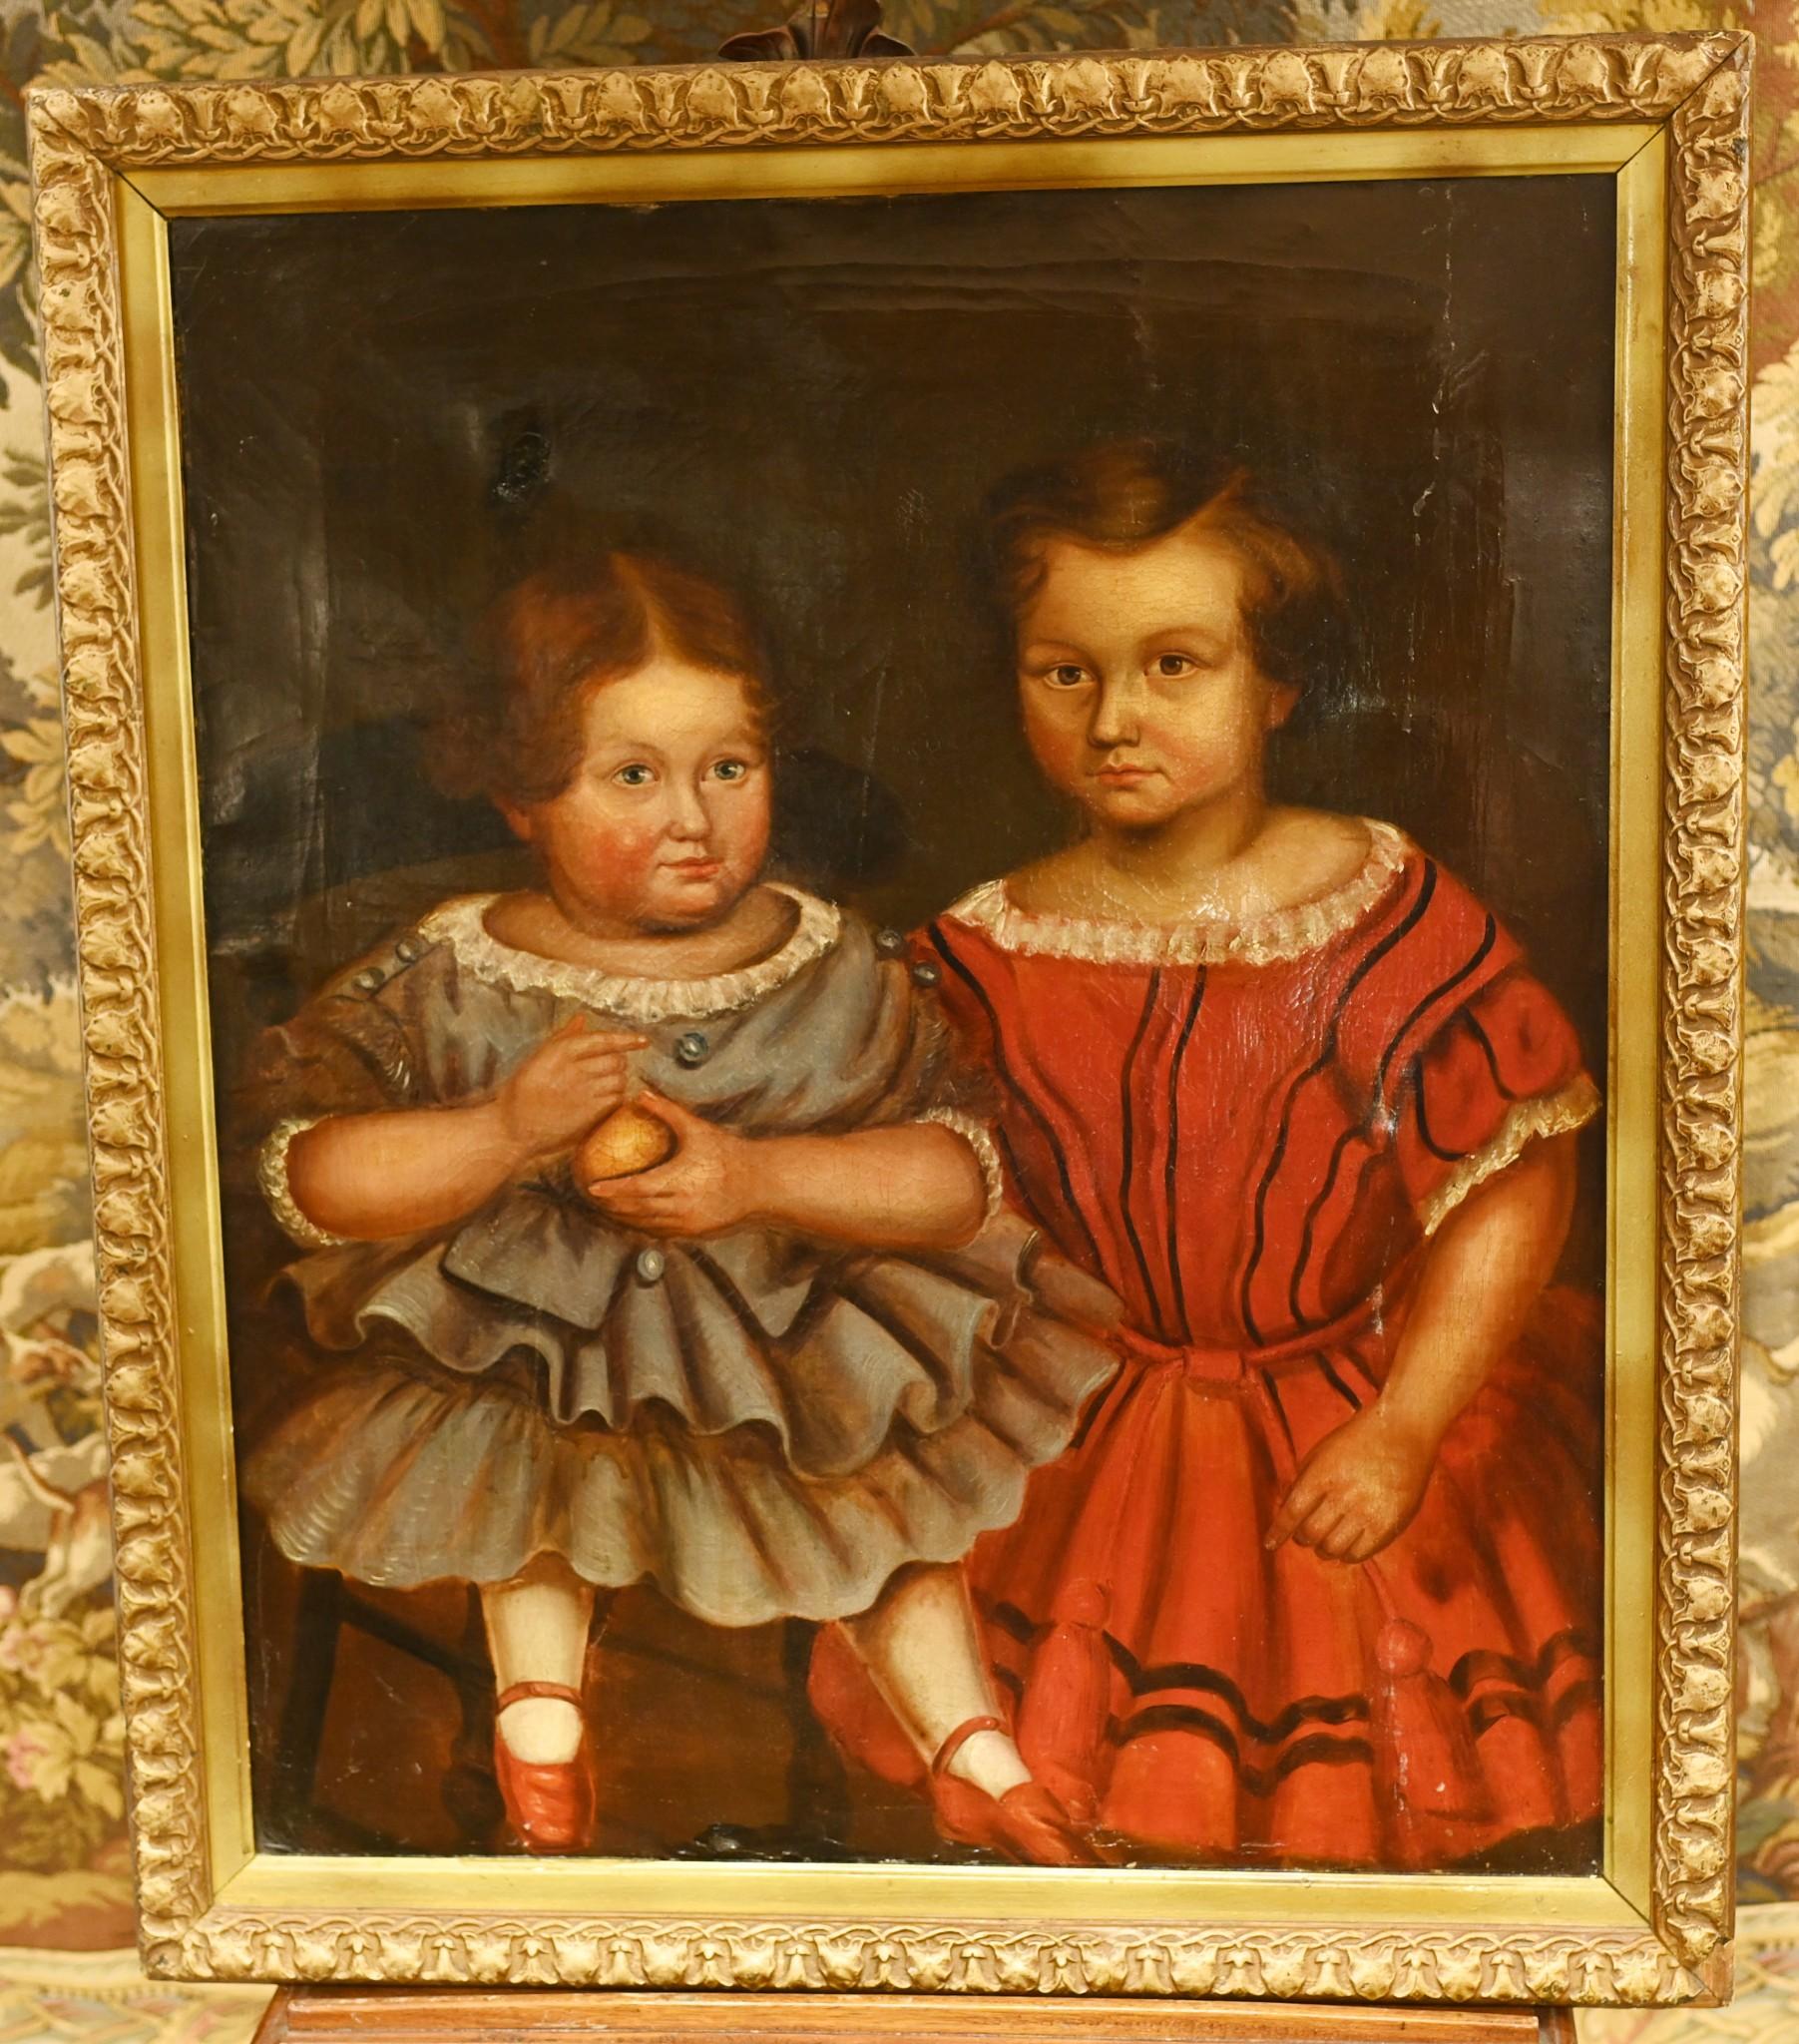 Vous voyez ici une magnifique peinture à l'huile primitive américaine représentant deux jeunes filles.
Ce portrait excentrique est une merveilleuse œuvre d'art populaire.
Circa 1840
Magnifique effet de craquelure dû à l'âge de la peinture qui ajoute